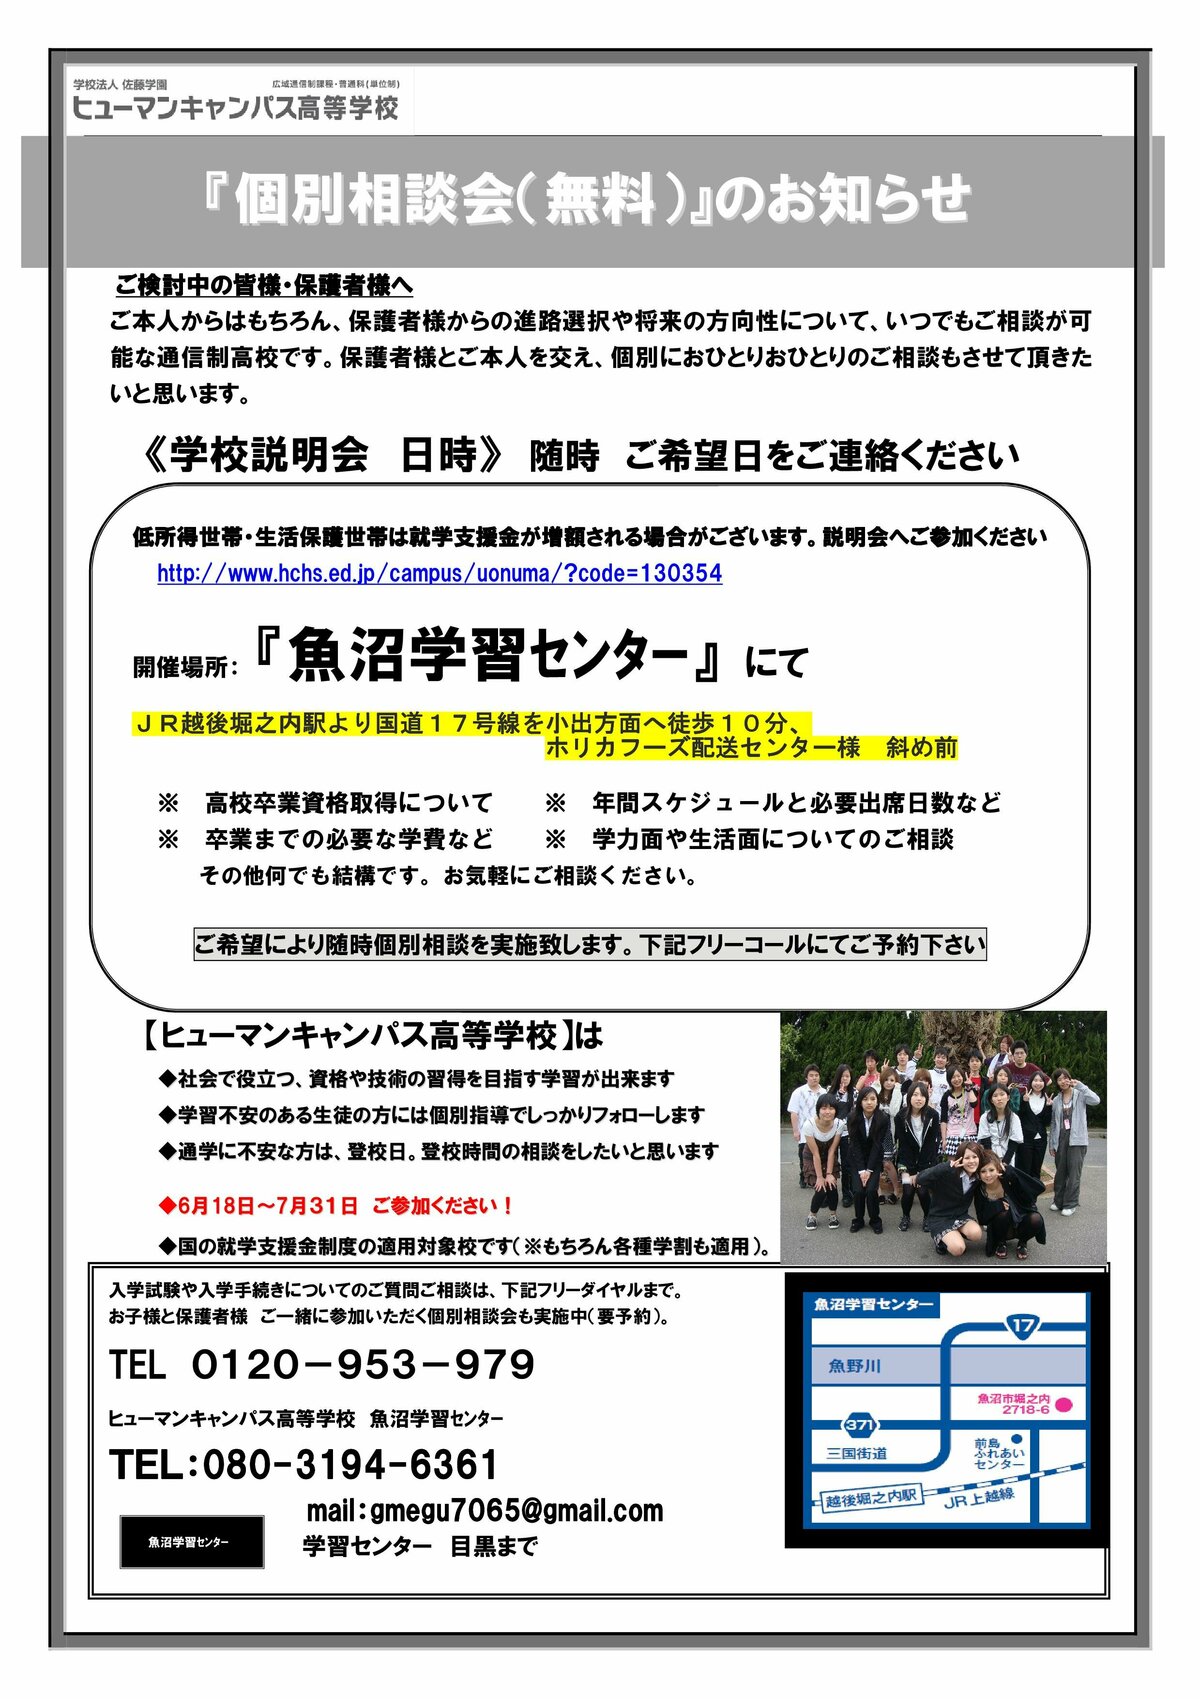 https://www.hchs.ed.jp/campus/uonuma/images/da91959e513b8f9f0ccc8a42685e9ae560e0db7a.jpg